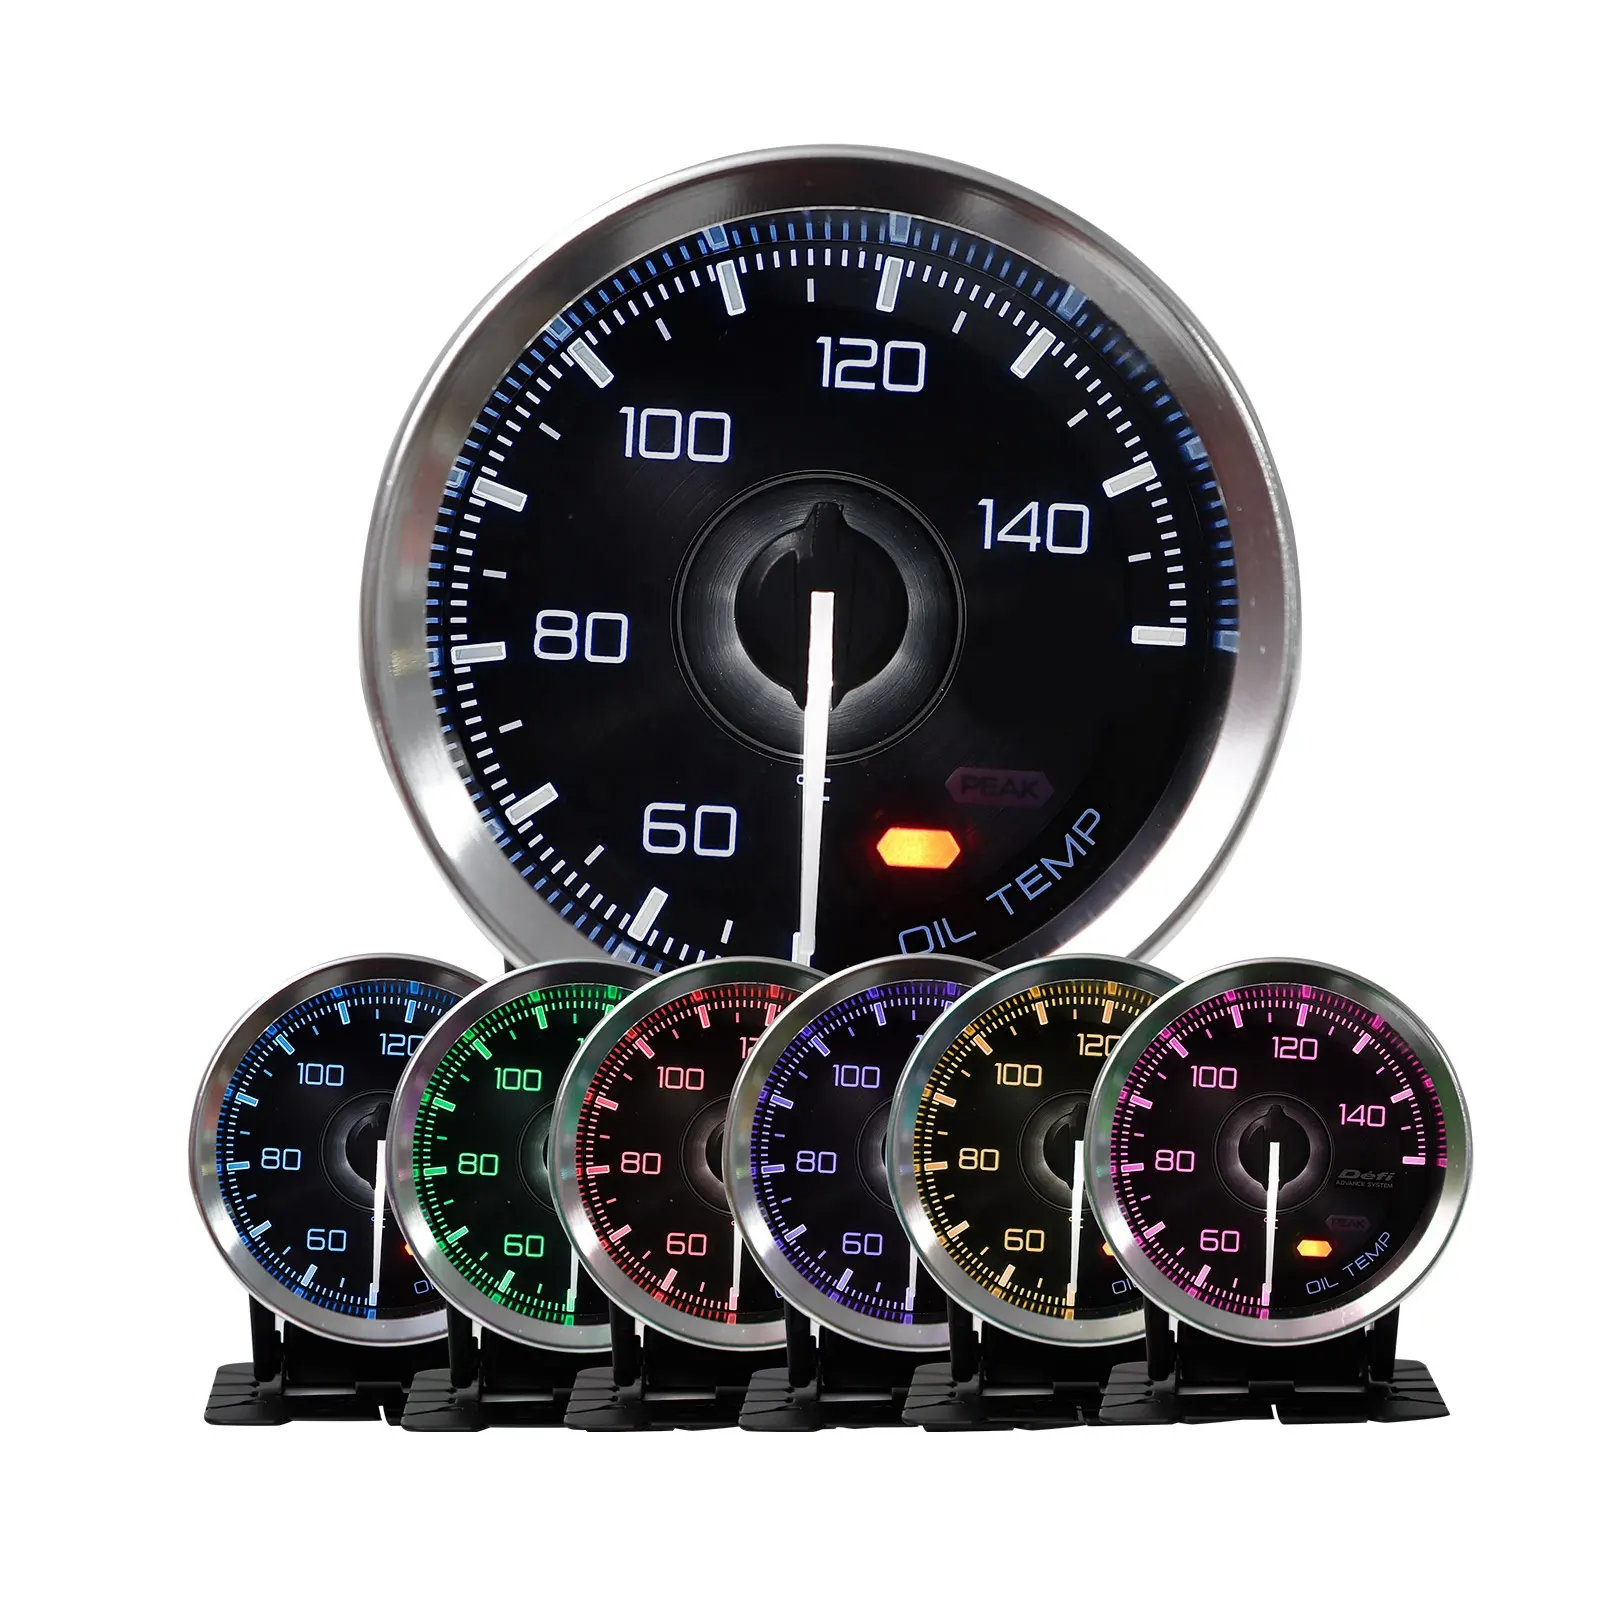 62mm Auto Meter 7 Farbe LED Digital Meter Boost Turbo Volt Anzeige Wasser Öl Temp Heizöl Druck U/min Vakuum AFR Manometer